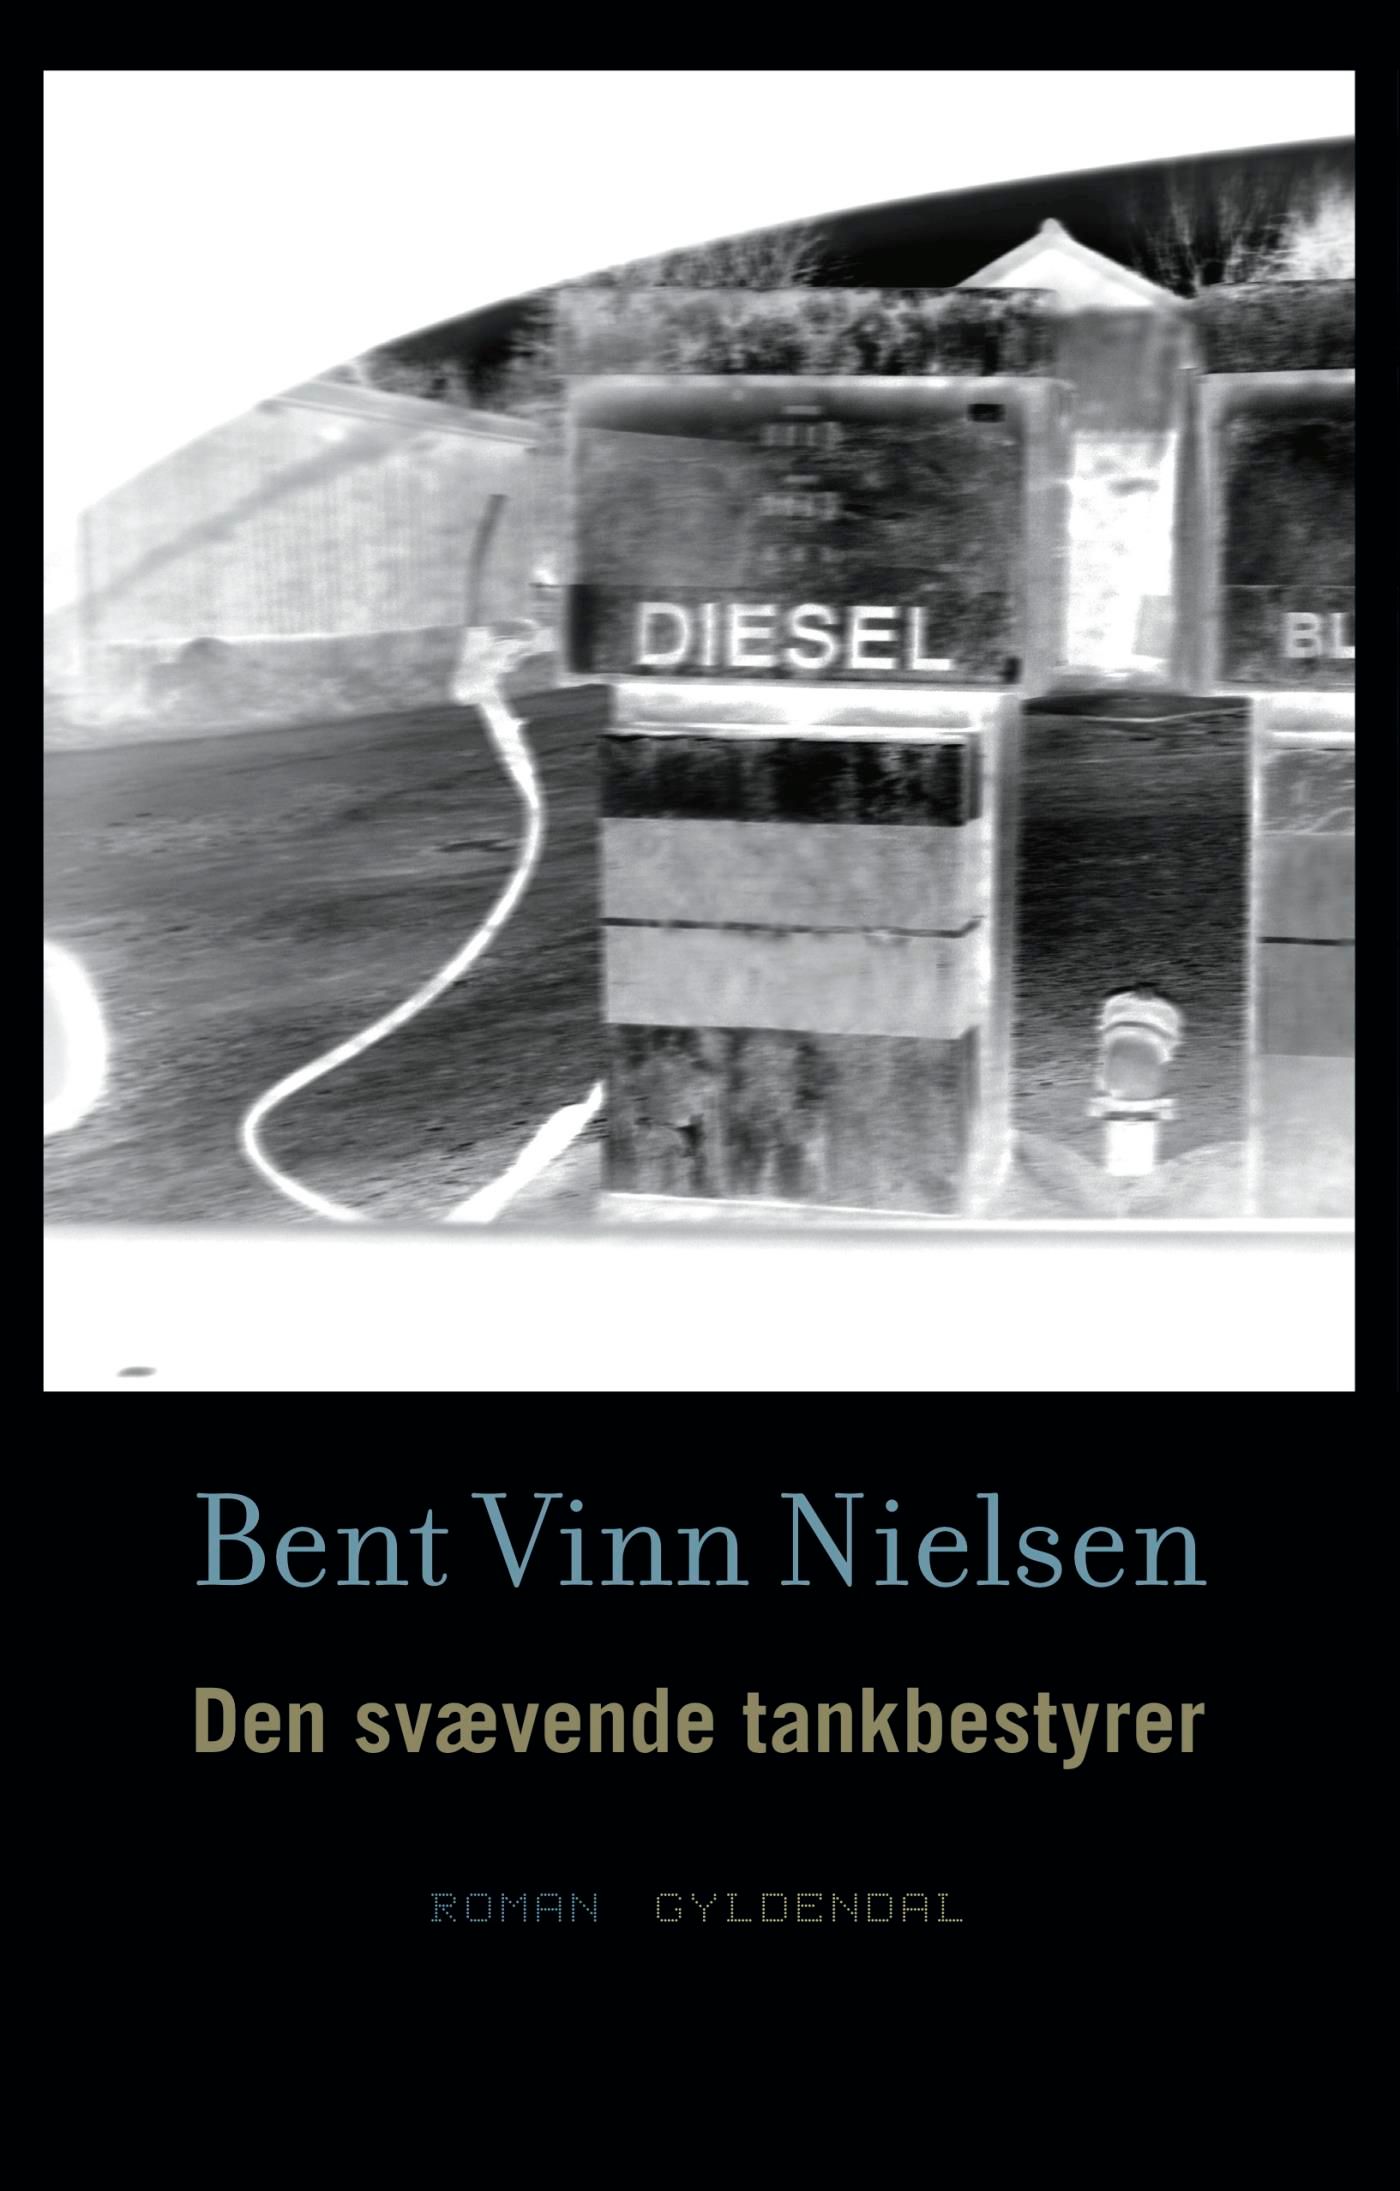 Den svævende tankbestyrer, e-bog af Bent Vinn Nielsen